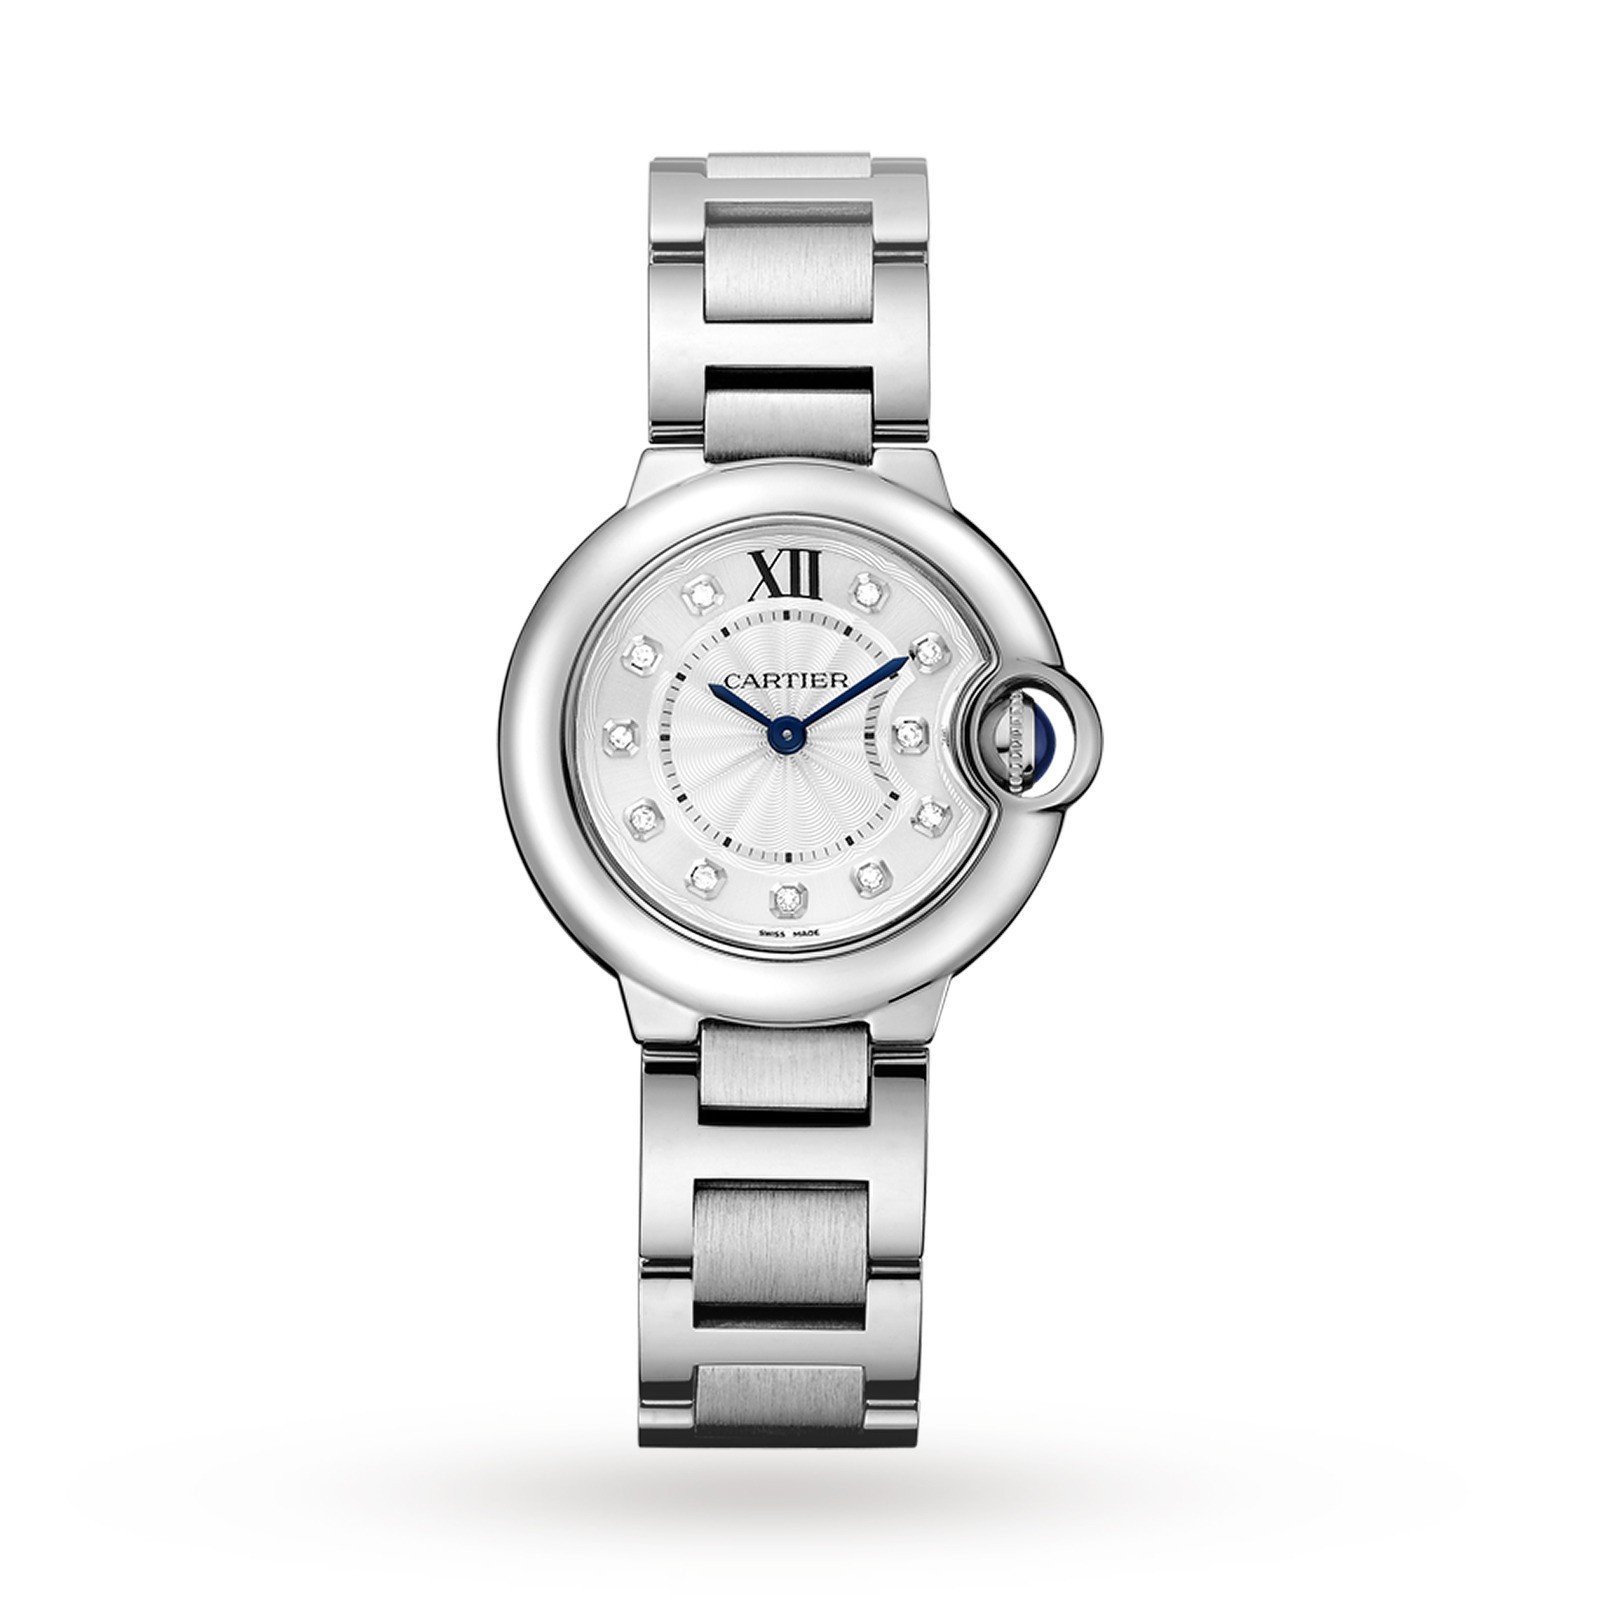 Swiss Ballon Bleu de Cartier watch, 28 mm, steel, diamonds